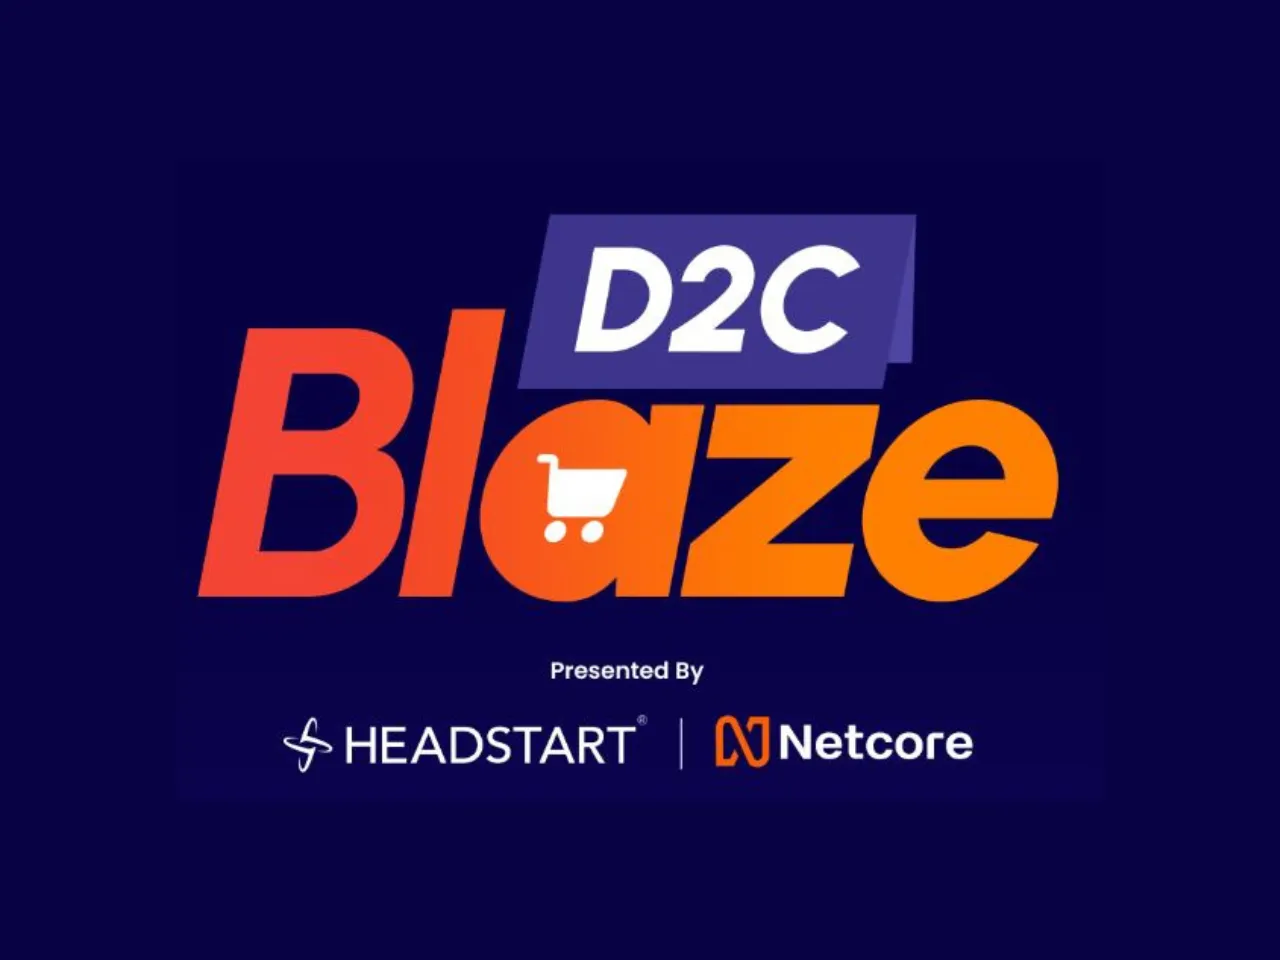 Netcore Cloud ‘D2C Blaze' accelerator program